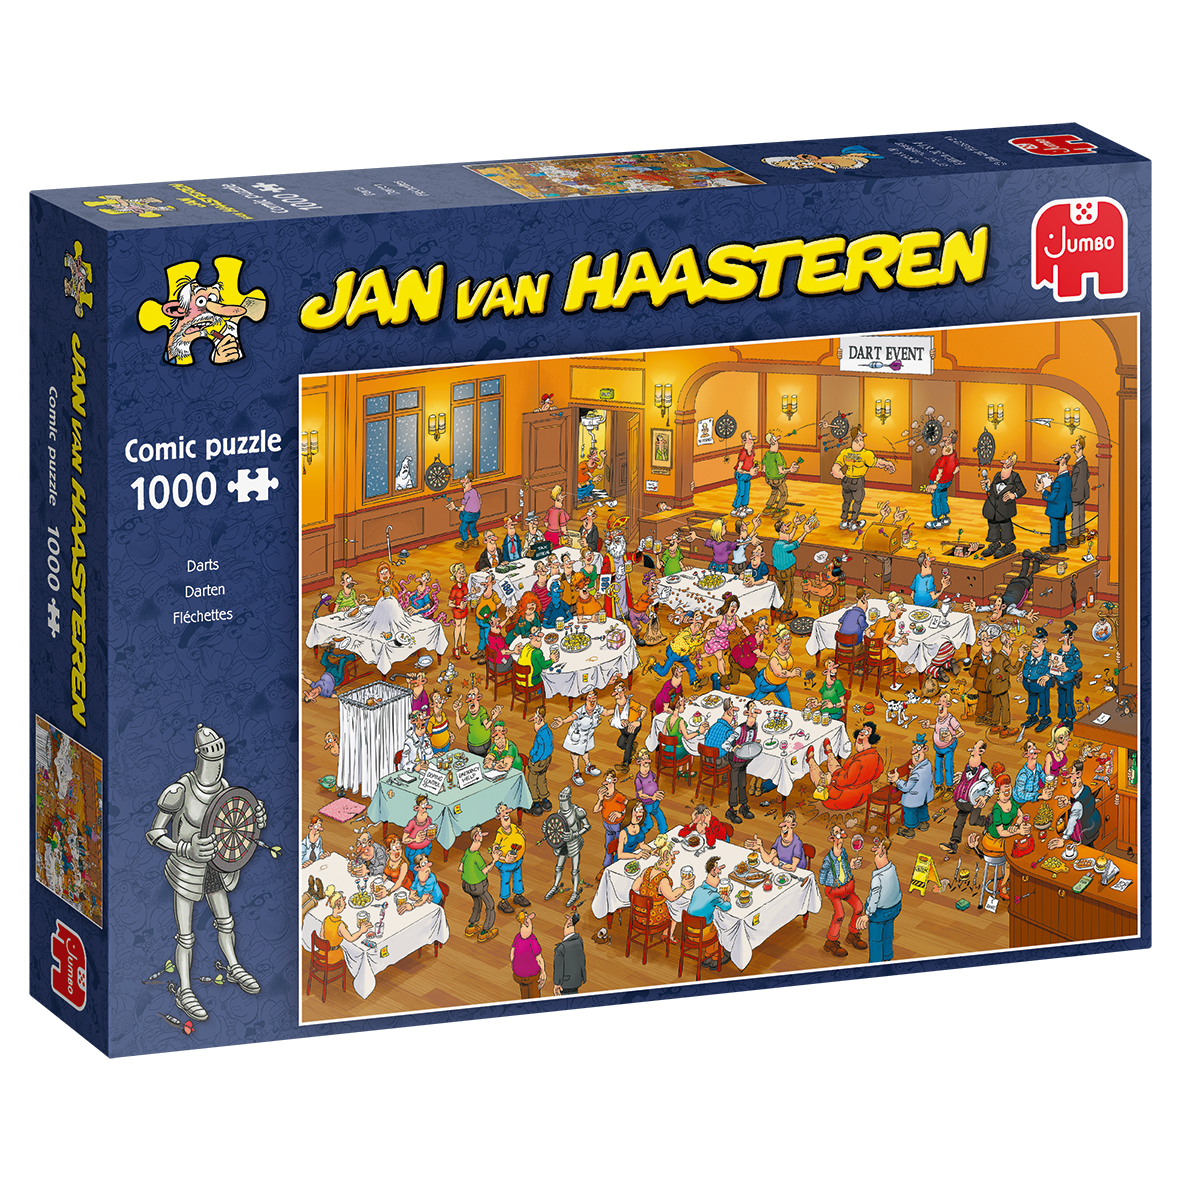 Jumbo Jan van Haasteren Darts 1000 зсы